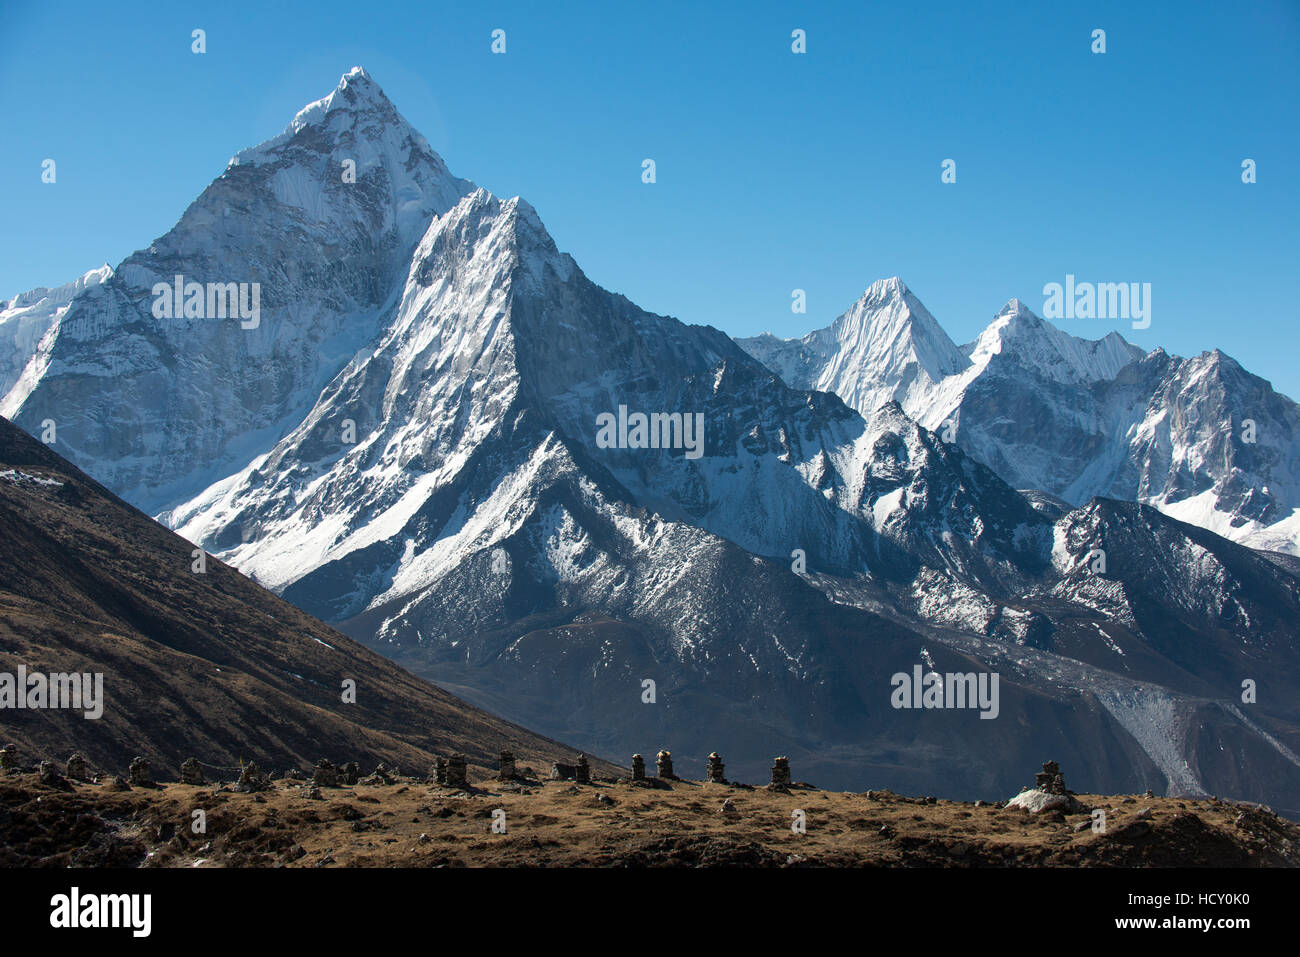 L'Ama Dablam, 6812m, dans la région de Khumbu (Népal, Everest) Banque D'Images